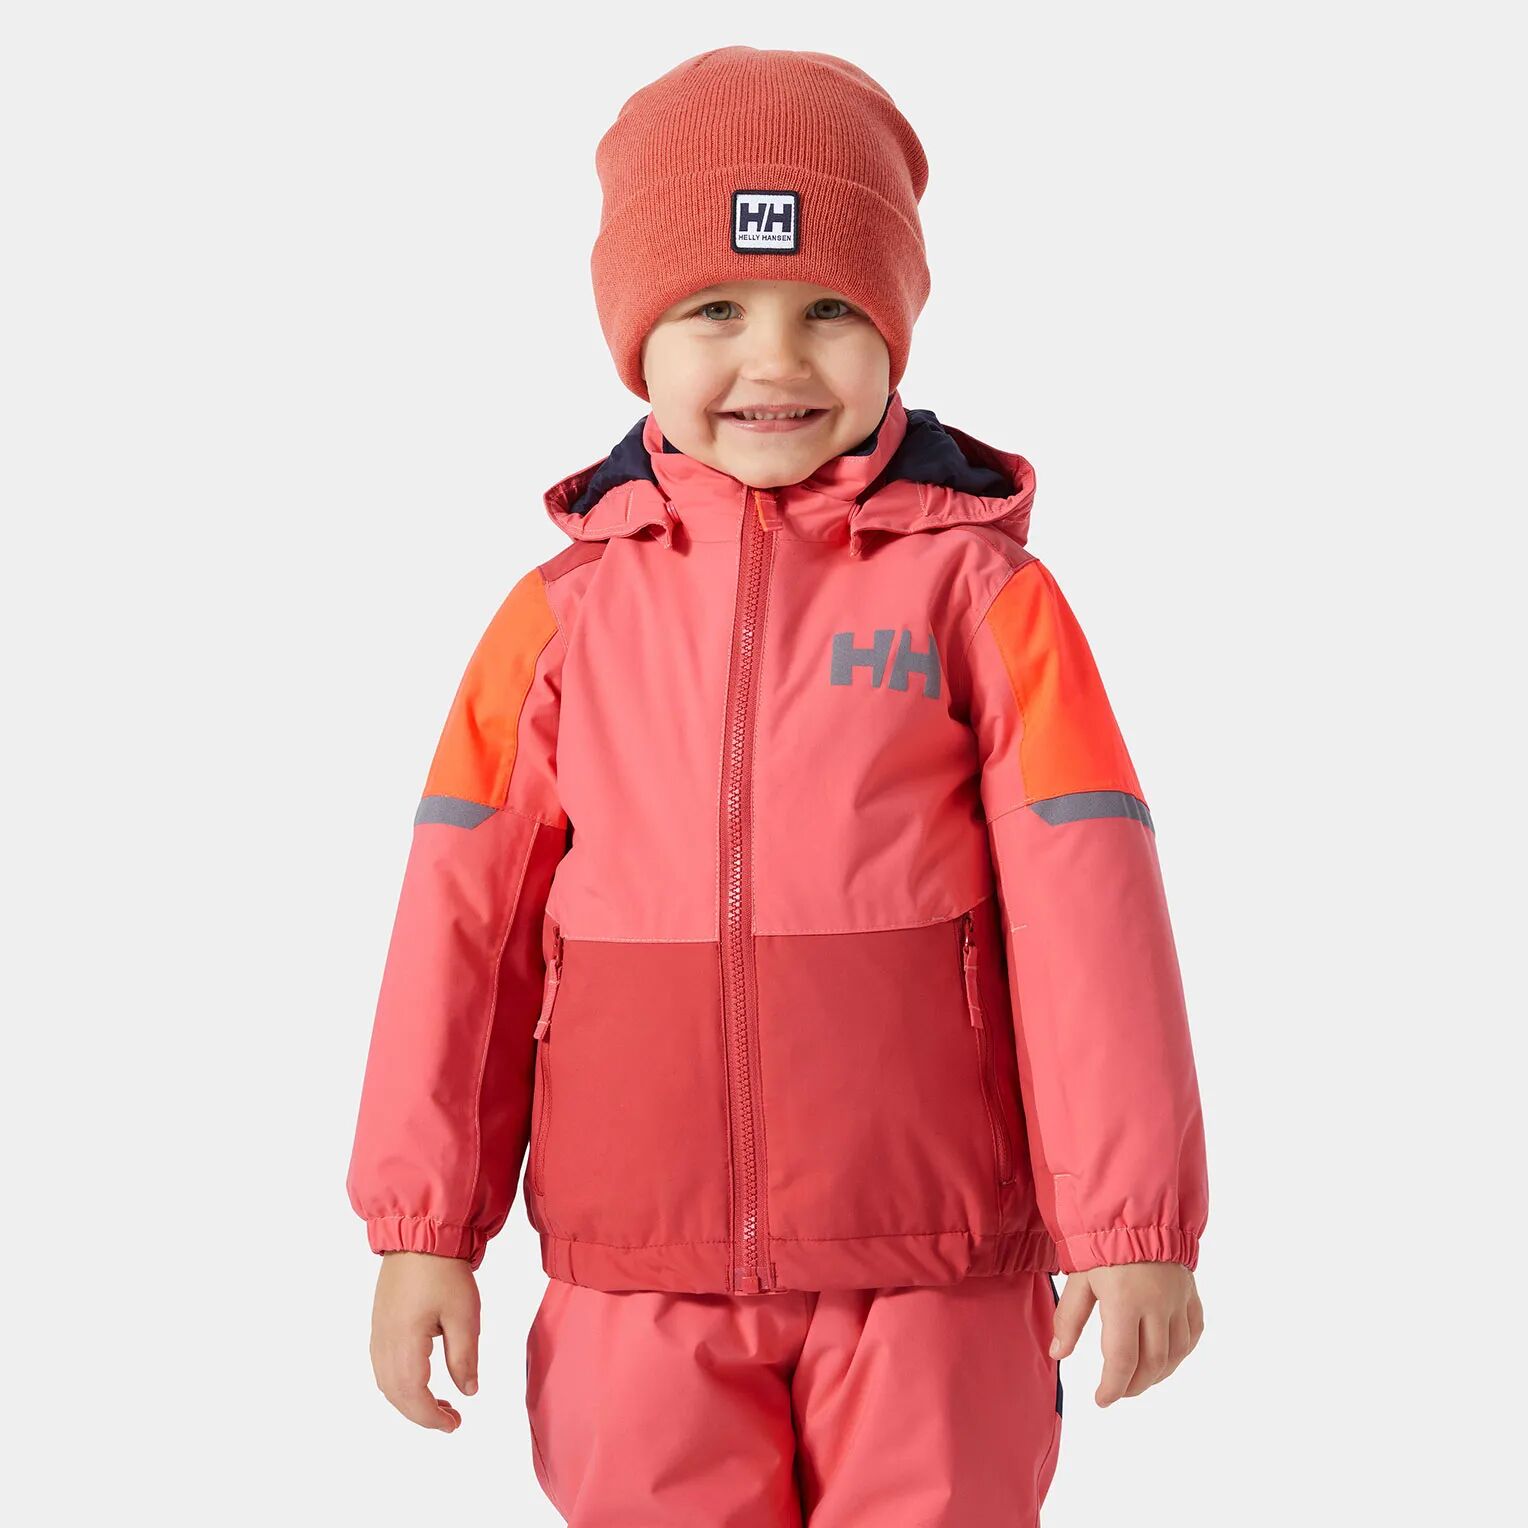 Helly Hansen Kids’ Rider 2.0 Insulated Ski Jacket Red 98/3